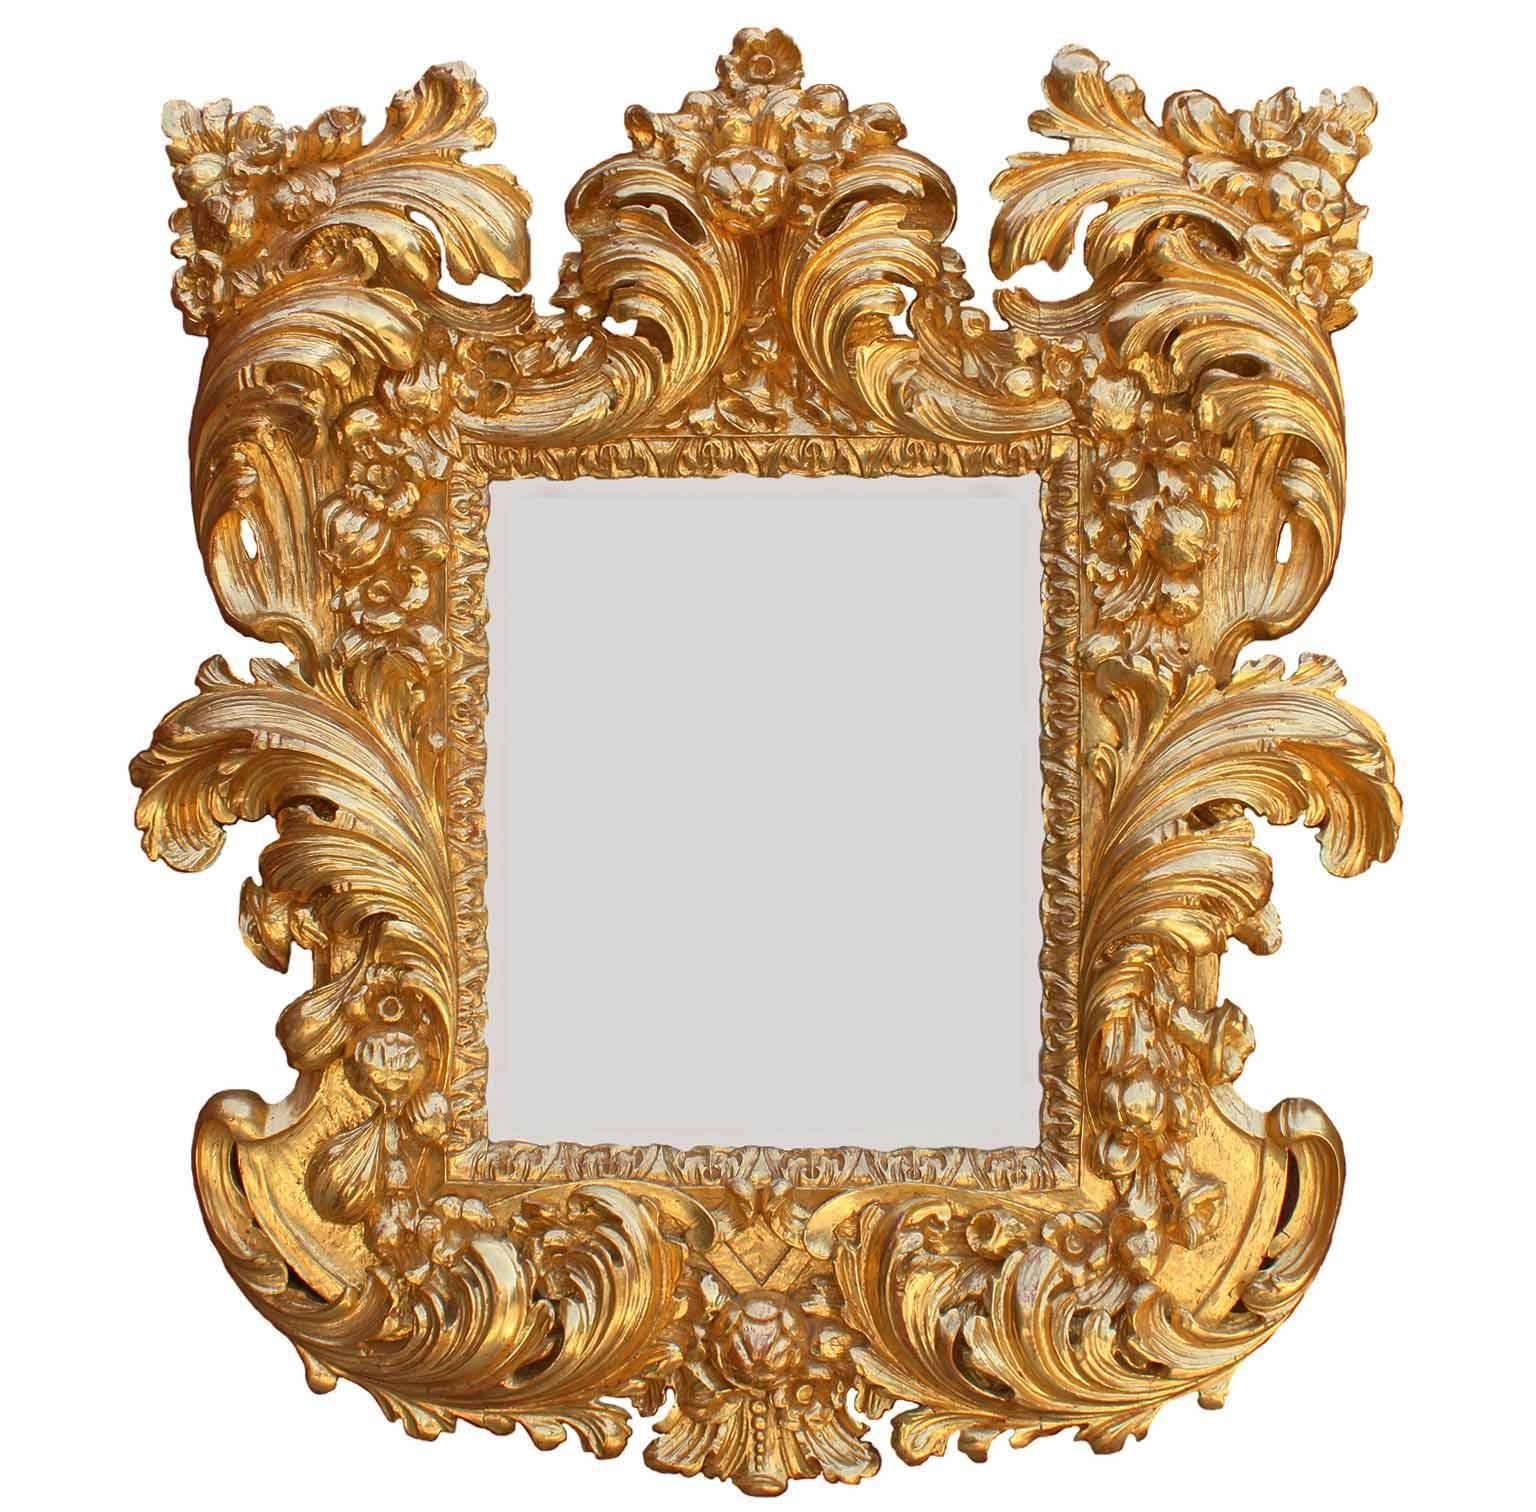 Ein feiner palastartiger italienischer Spiegelrahmen im Barockstil des 19. Jahrhunderts mit kräftigen Schnitzereien aus Florentiner Goldholz. Der kunstvoll geschnitzte Rahmen mit Schriftrollen, Akanthus, Früchten und Blumenmuster ist mit einer